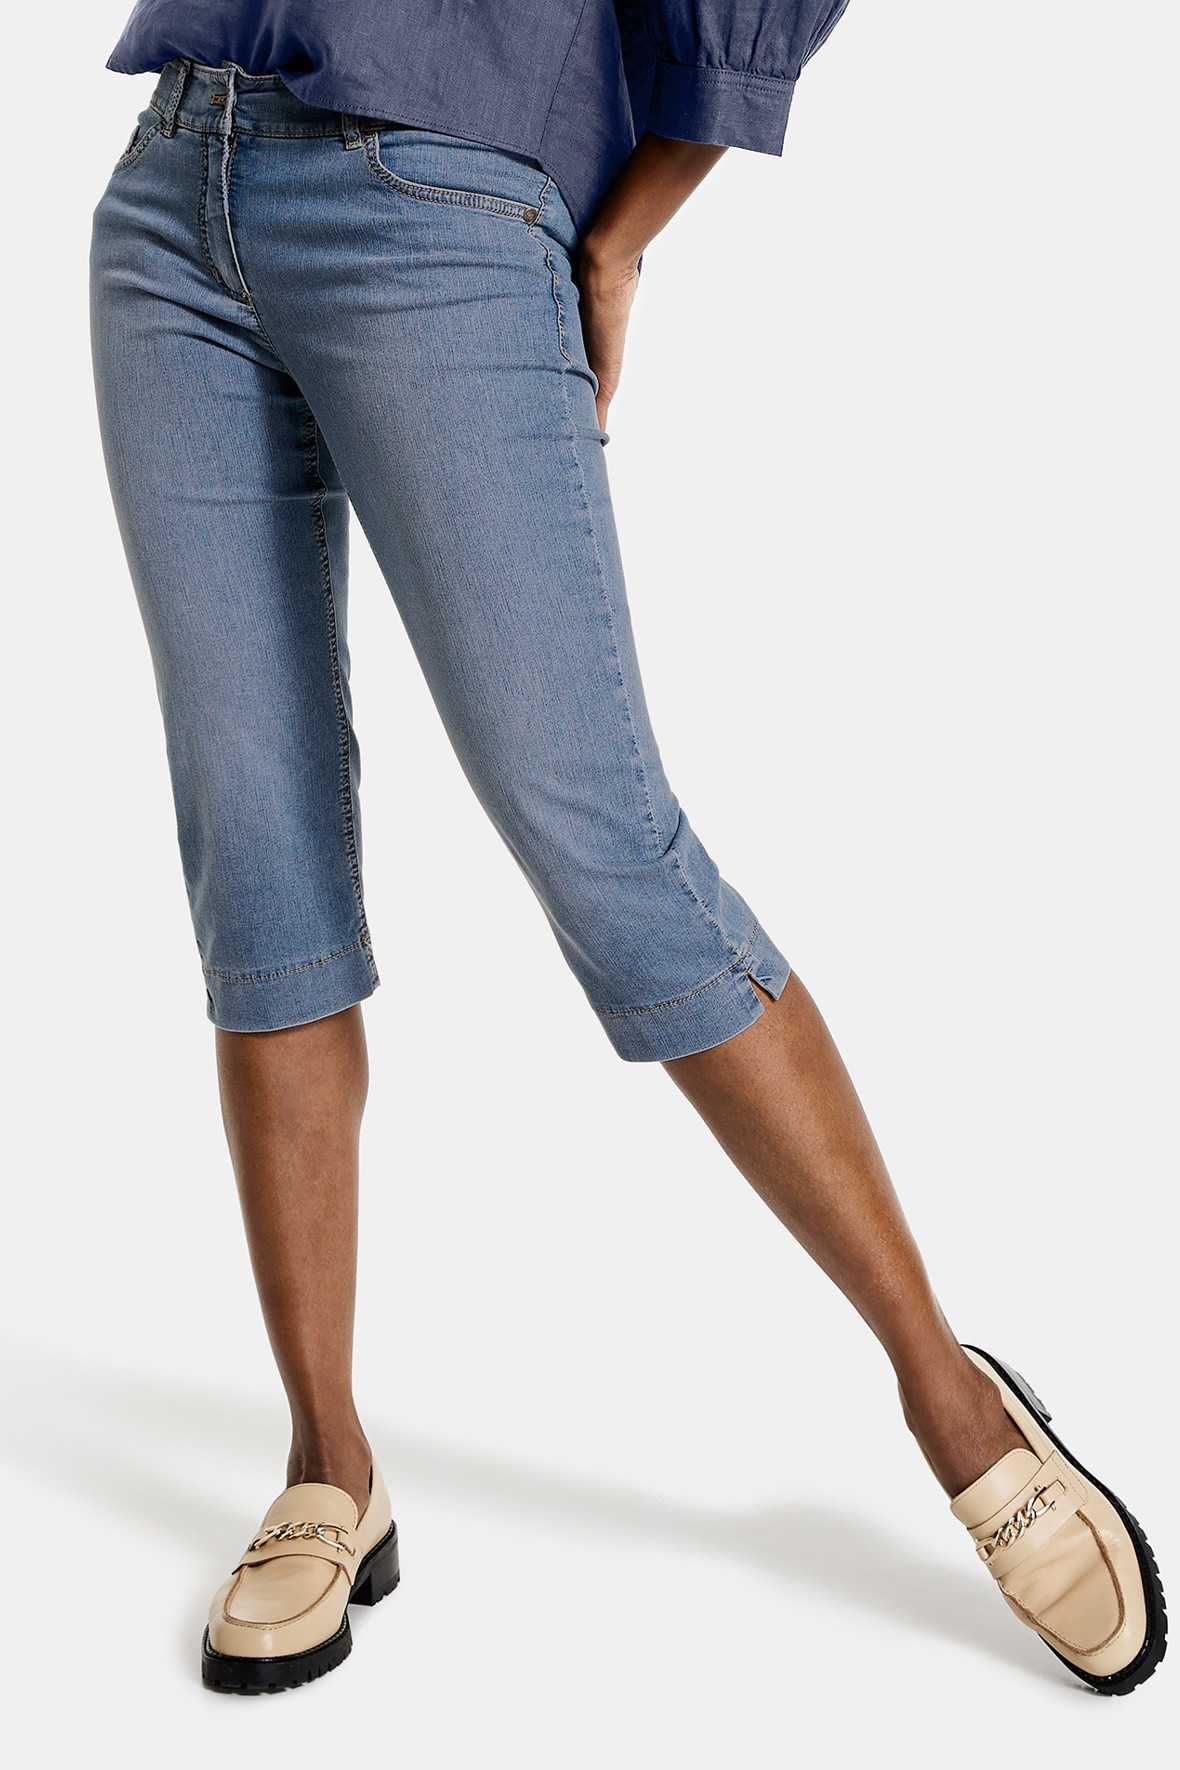 Gerry Weber capri bukser jeans . skinny - til kvinder - Lohse